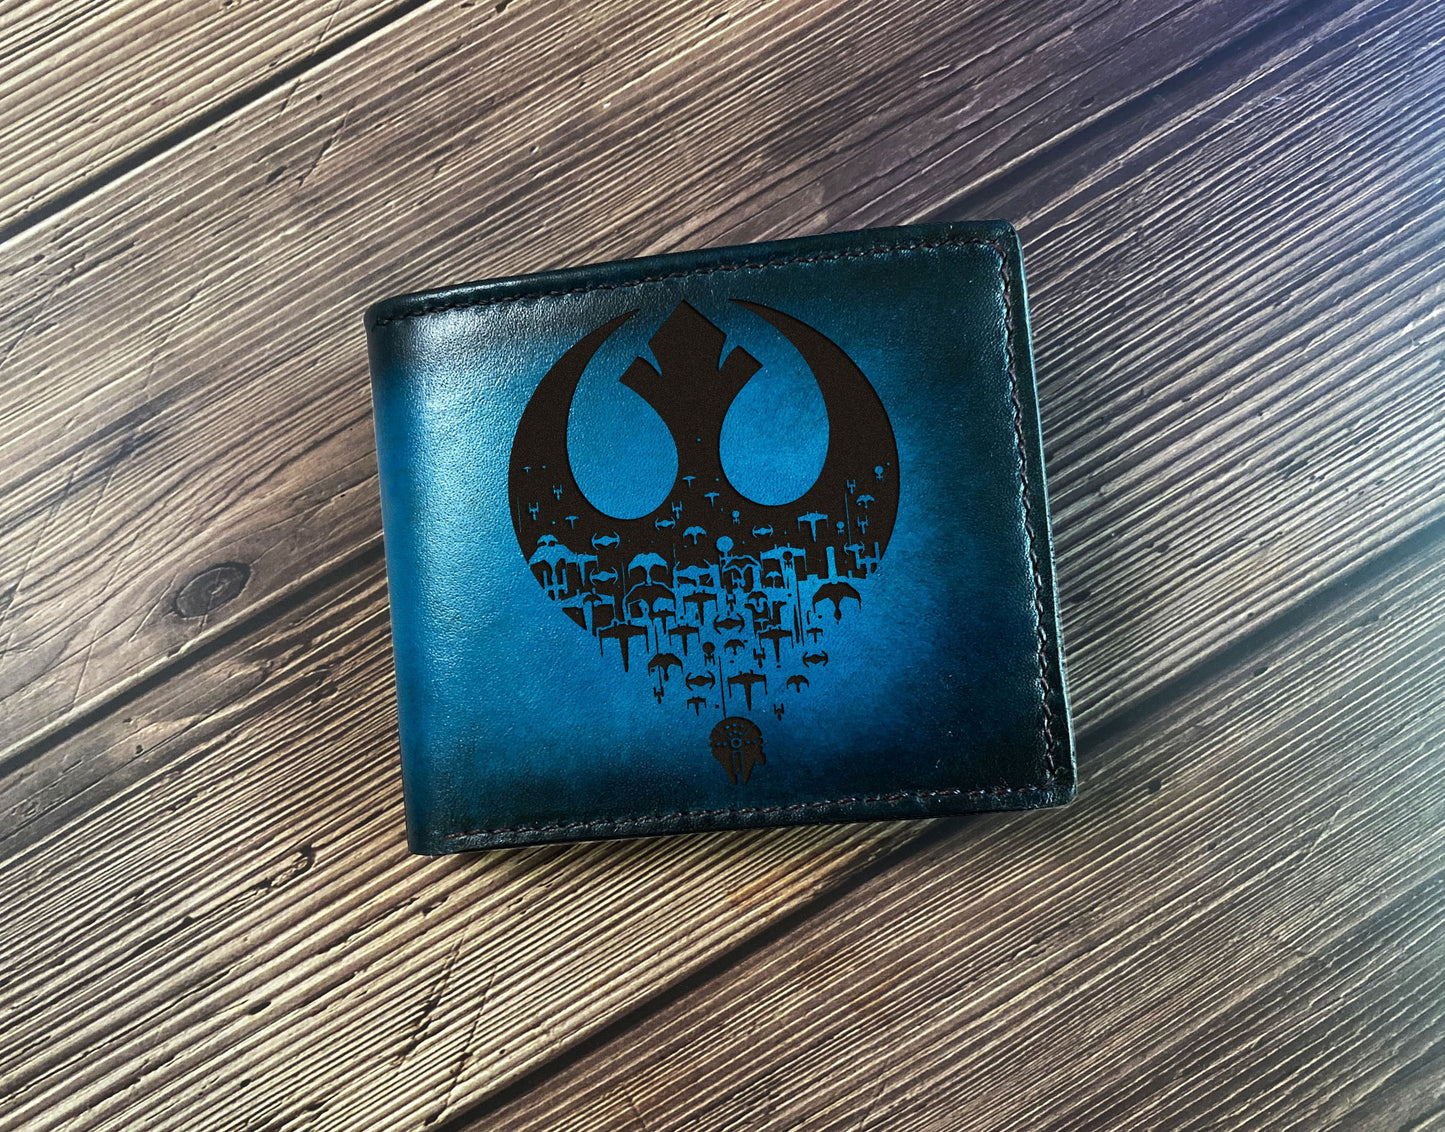 Jedi Starwars logo engraving wallet, starwars men's wallet, gift for him, birthday anniversary starwars style present, wedding gift ideas